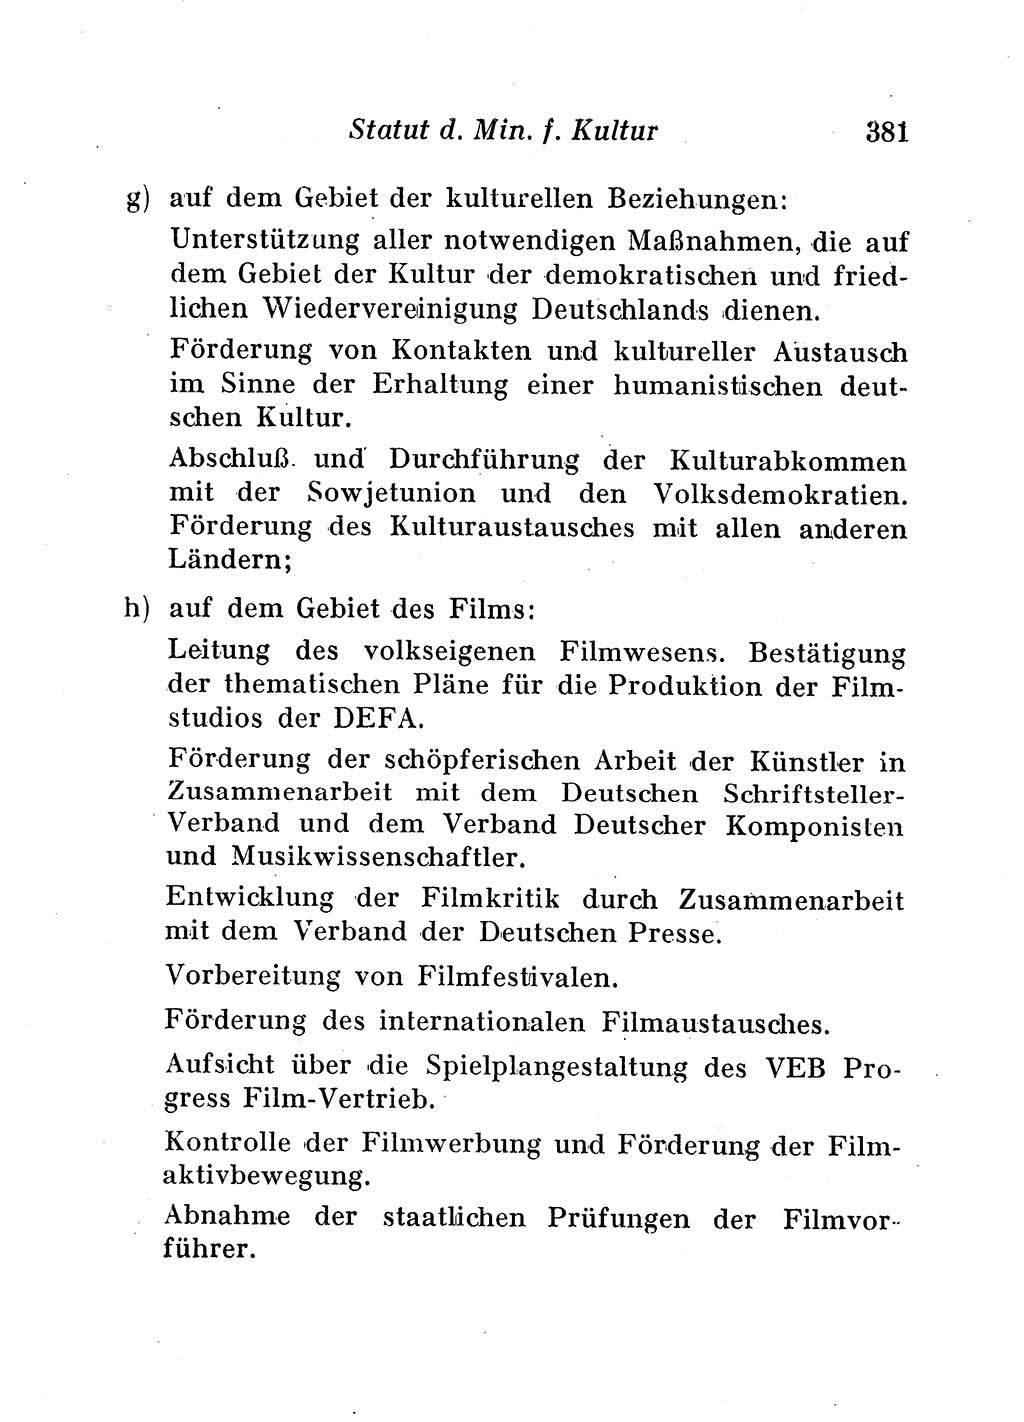 Staats- und verwaltungsrechtliche Gesetze der Deutschen Demokratischen Republik (DDR) 1958, Seite 381 (StVerwR Ges. DDR 1958, S. 381)